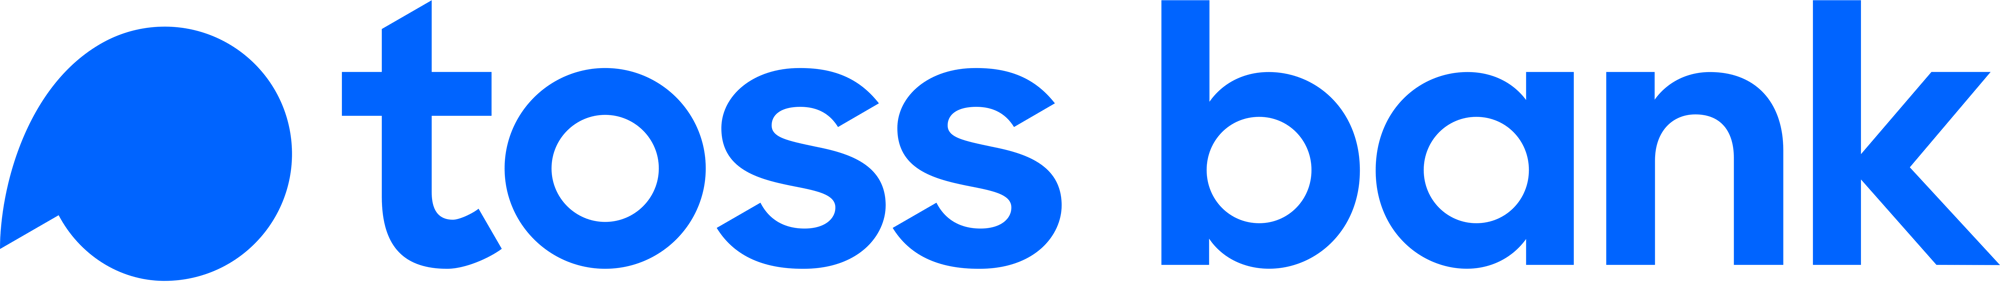 toss-logo-bank-blue